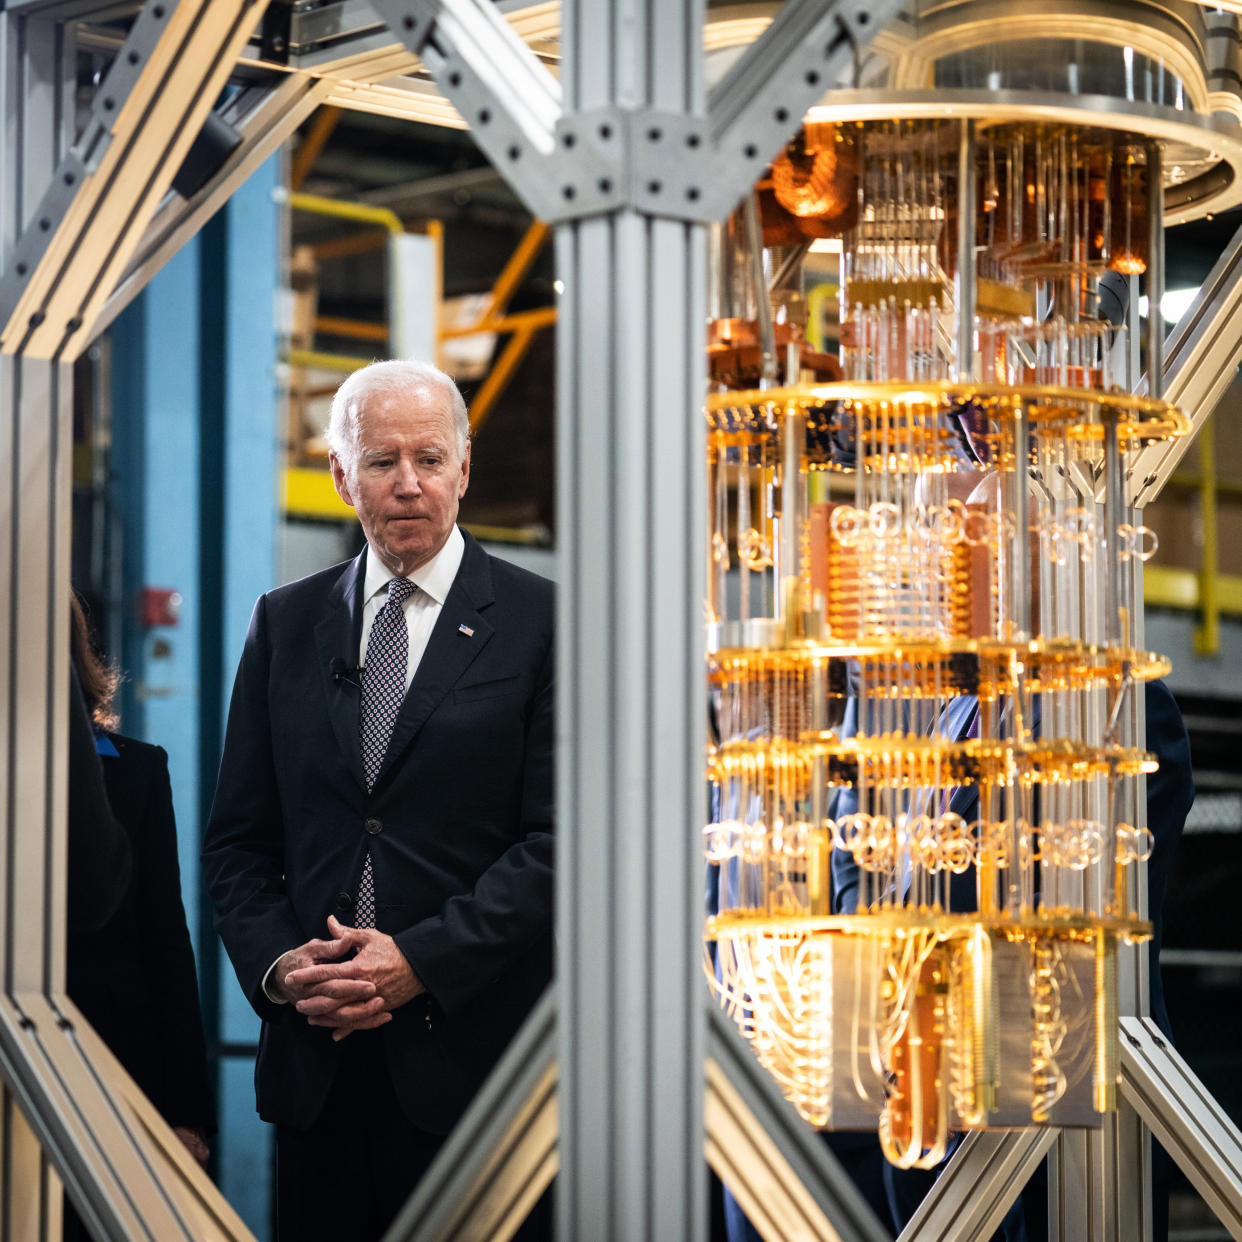 El presidente Joe Biden con la computadora cuántica System One de IBM durante una visita a las instalaciones en Poughkeepsie, Nueva York, el 6 de octubre de 2022. (Erin Schaff/The New York Times)

